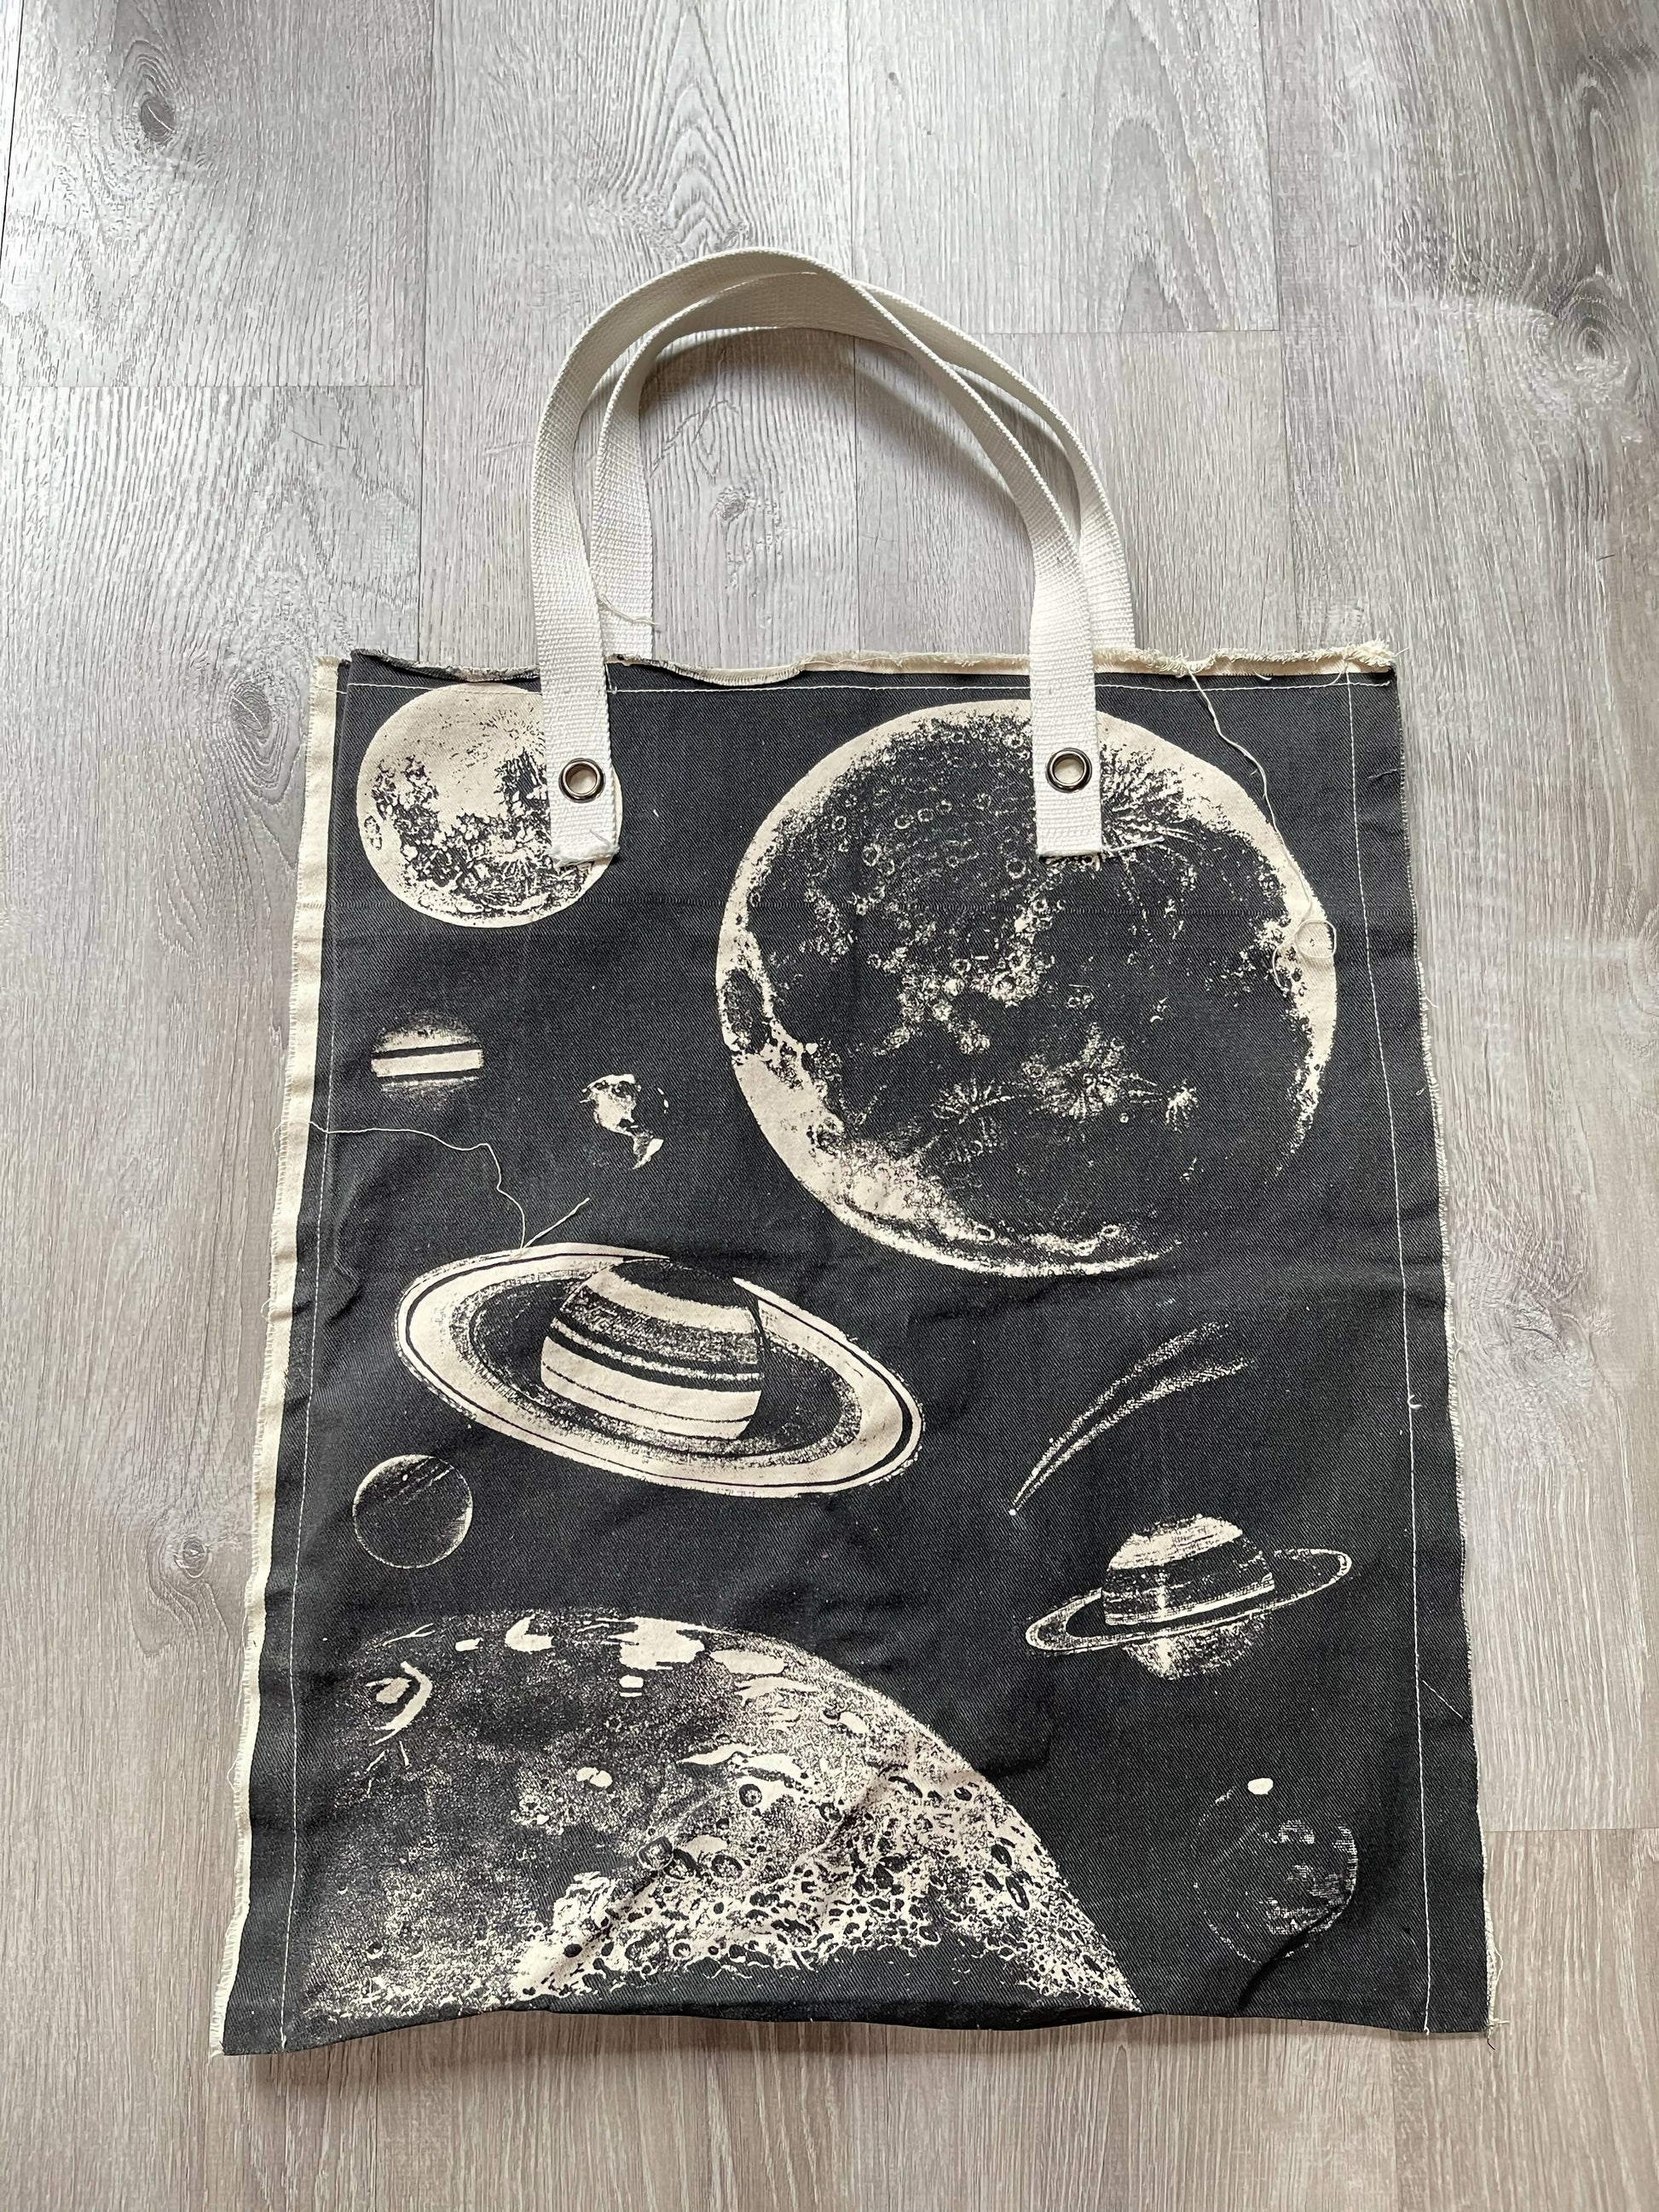 Celestial Map Messenger Bag